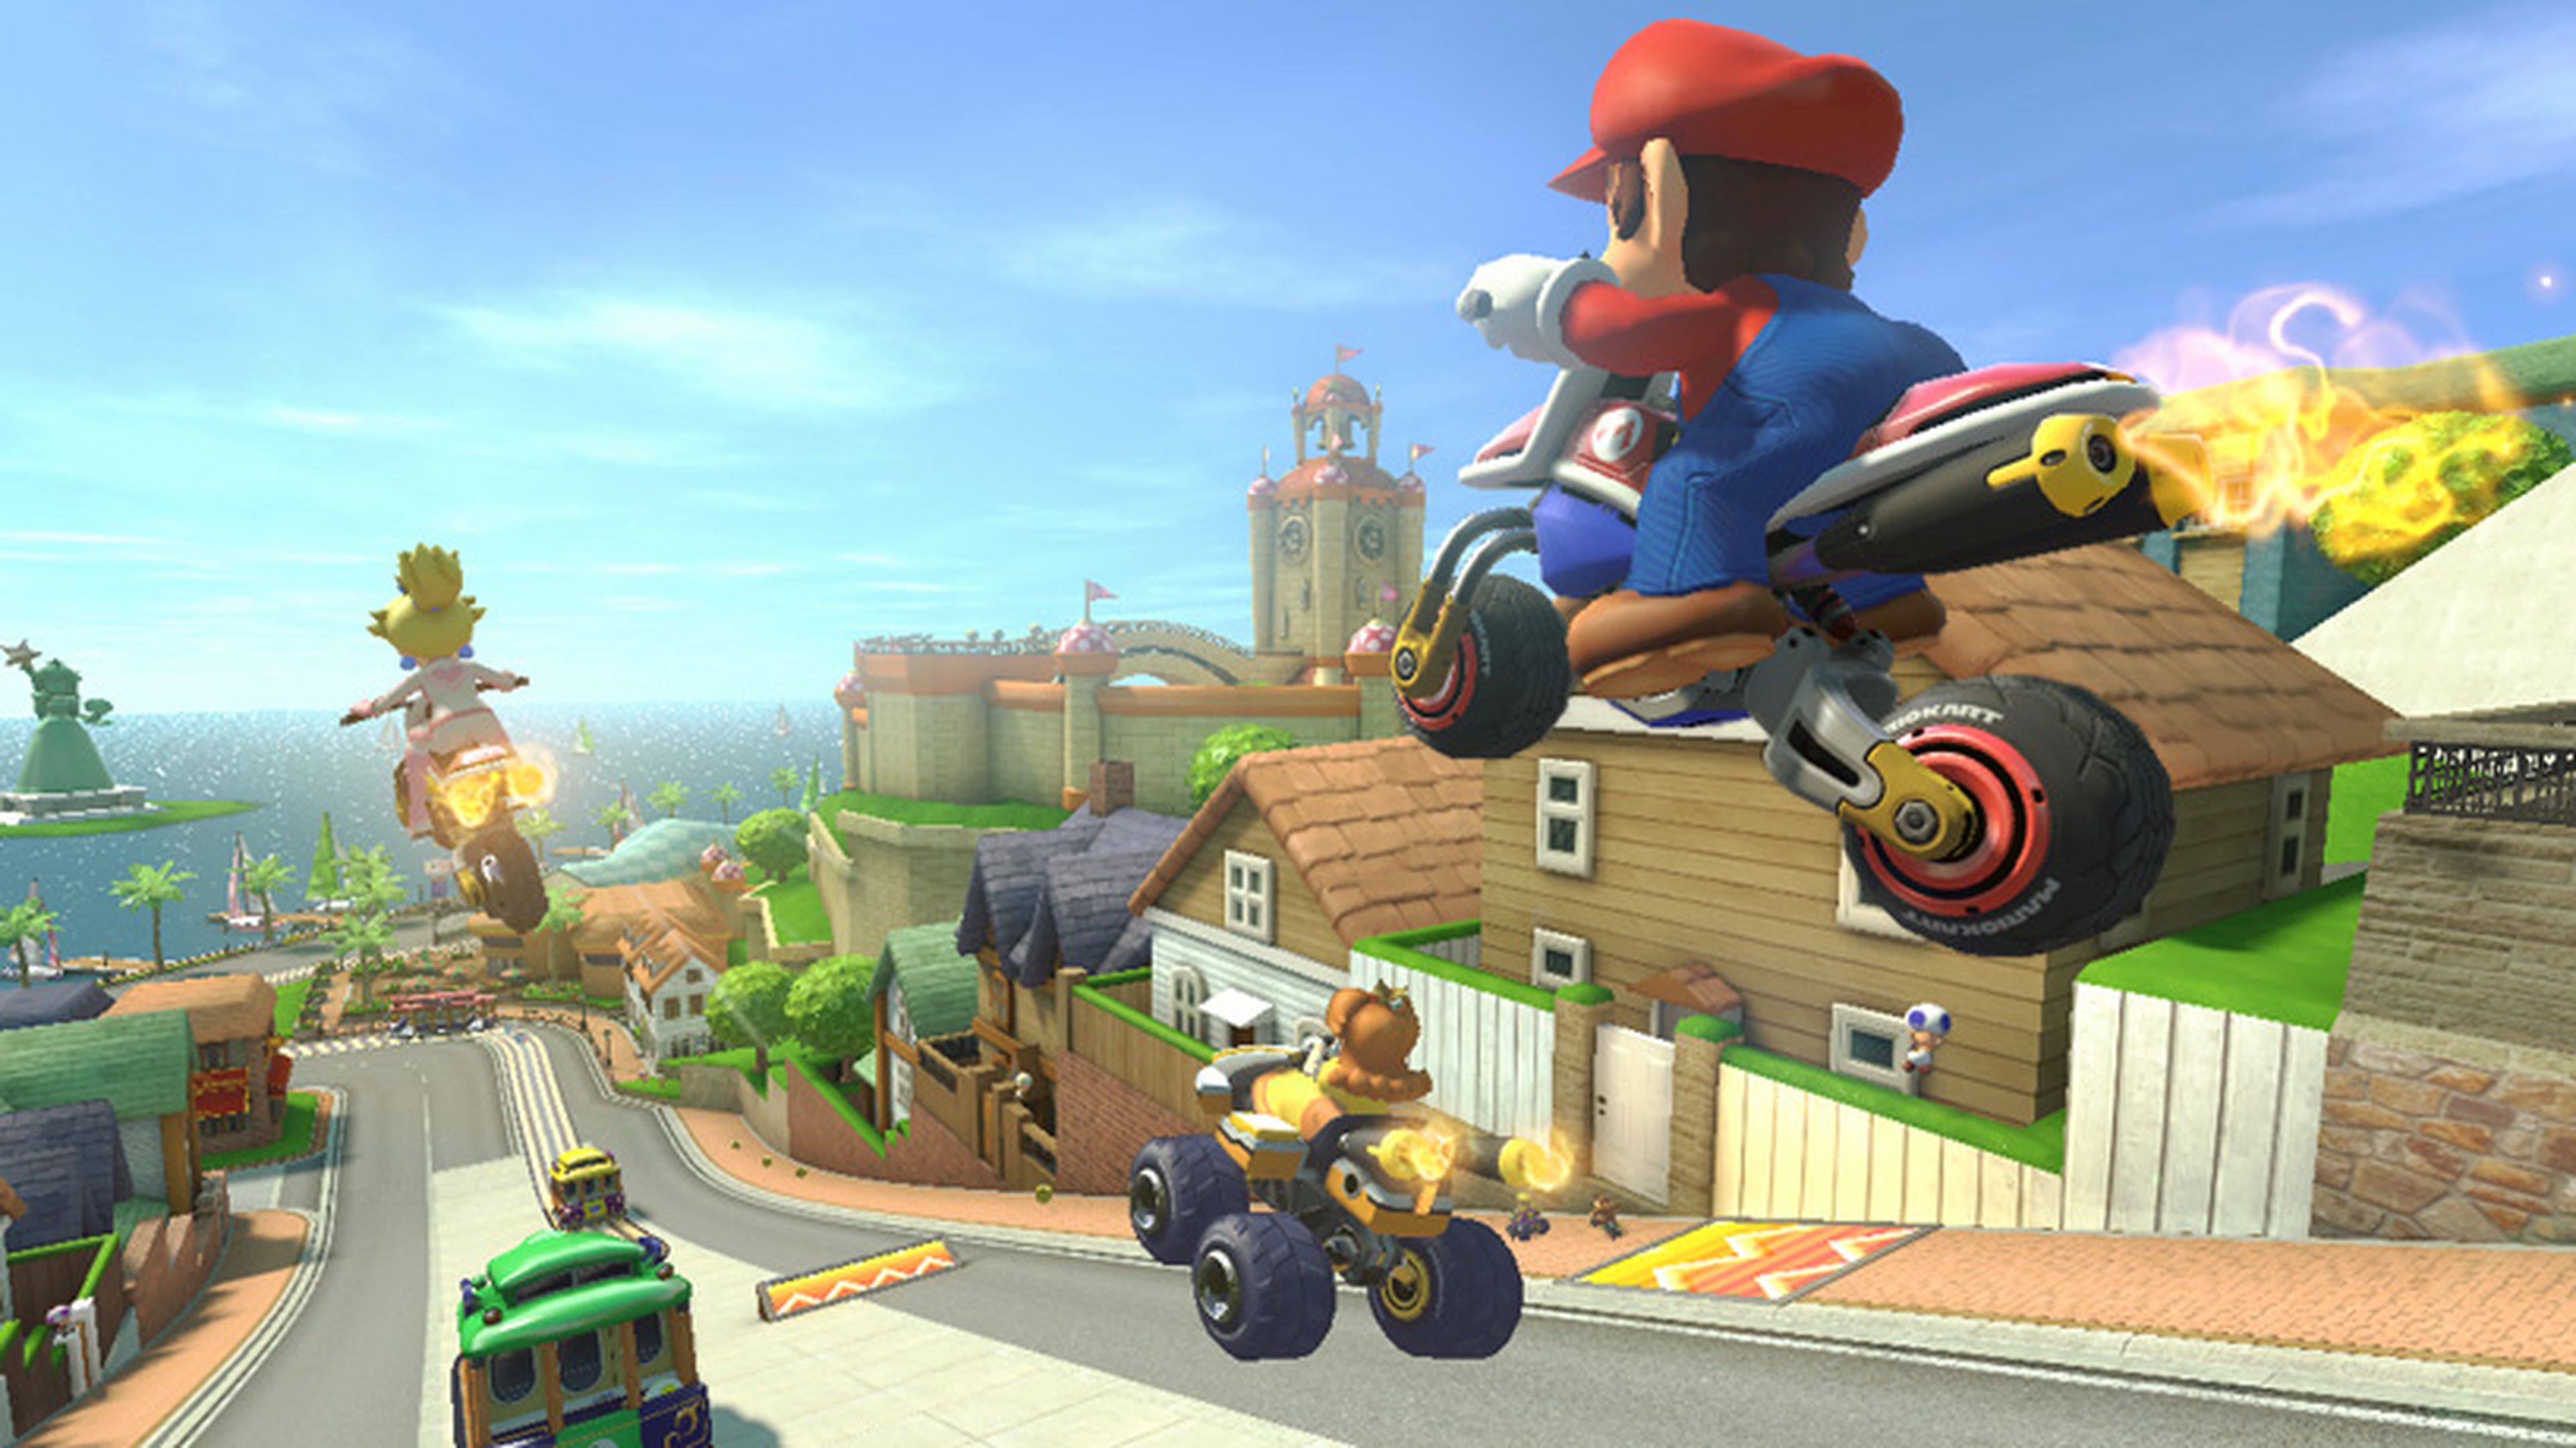 Mario Kart podría incluir personajes de otras franquicias en el futuro